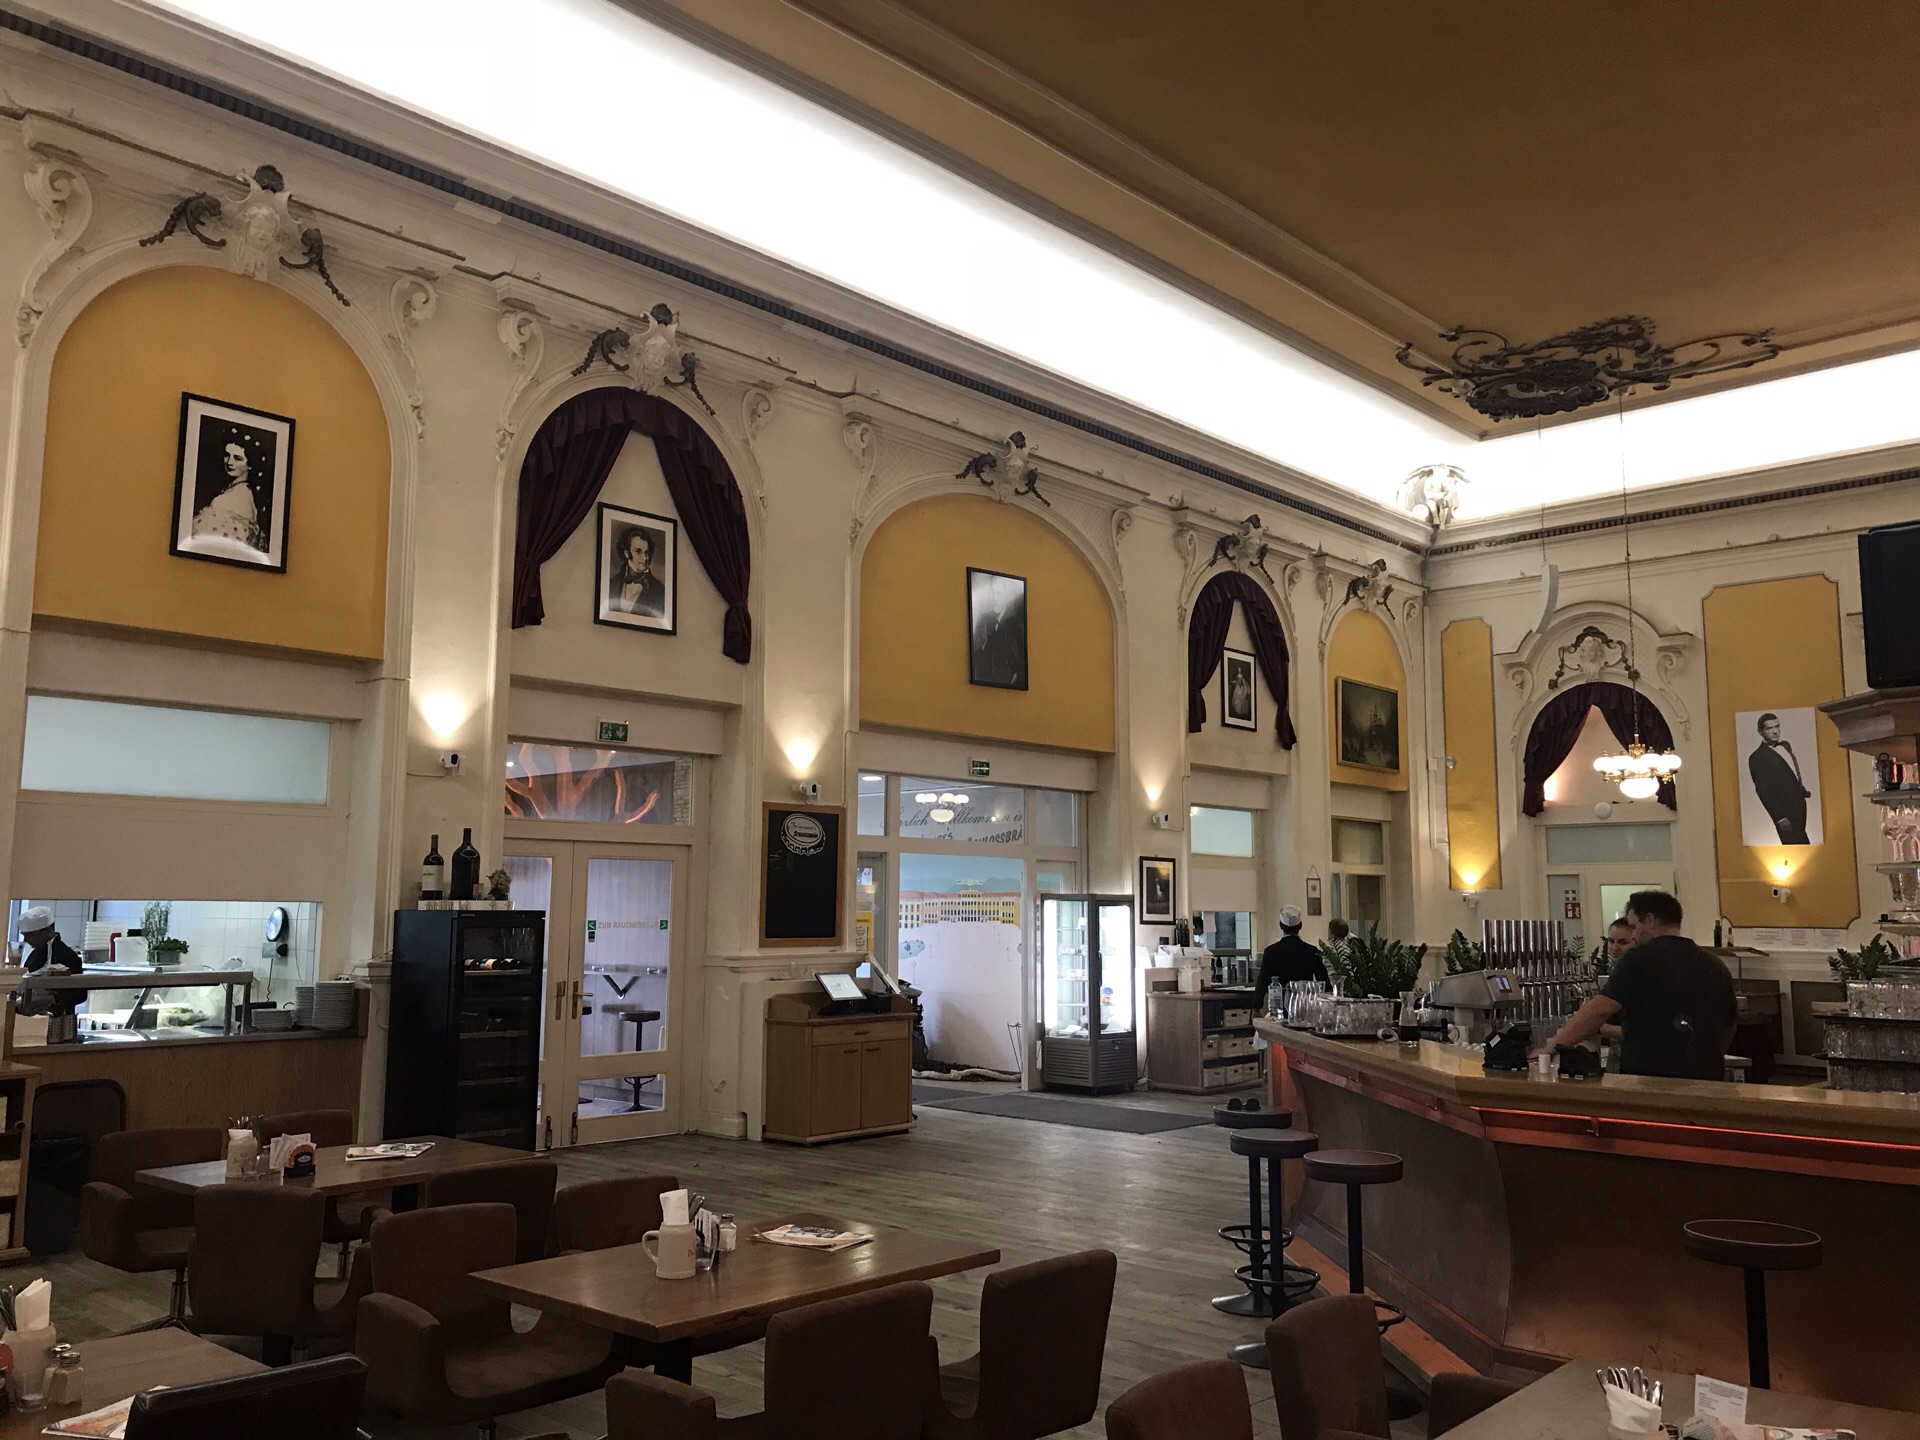 Brandauers Bierstube Reviews: Food & Drinks in Vienna– Trip.com